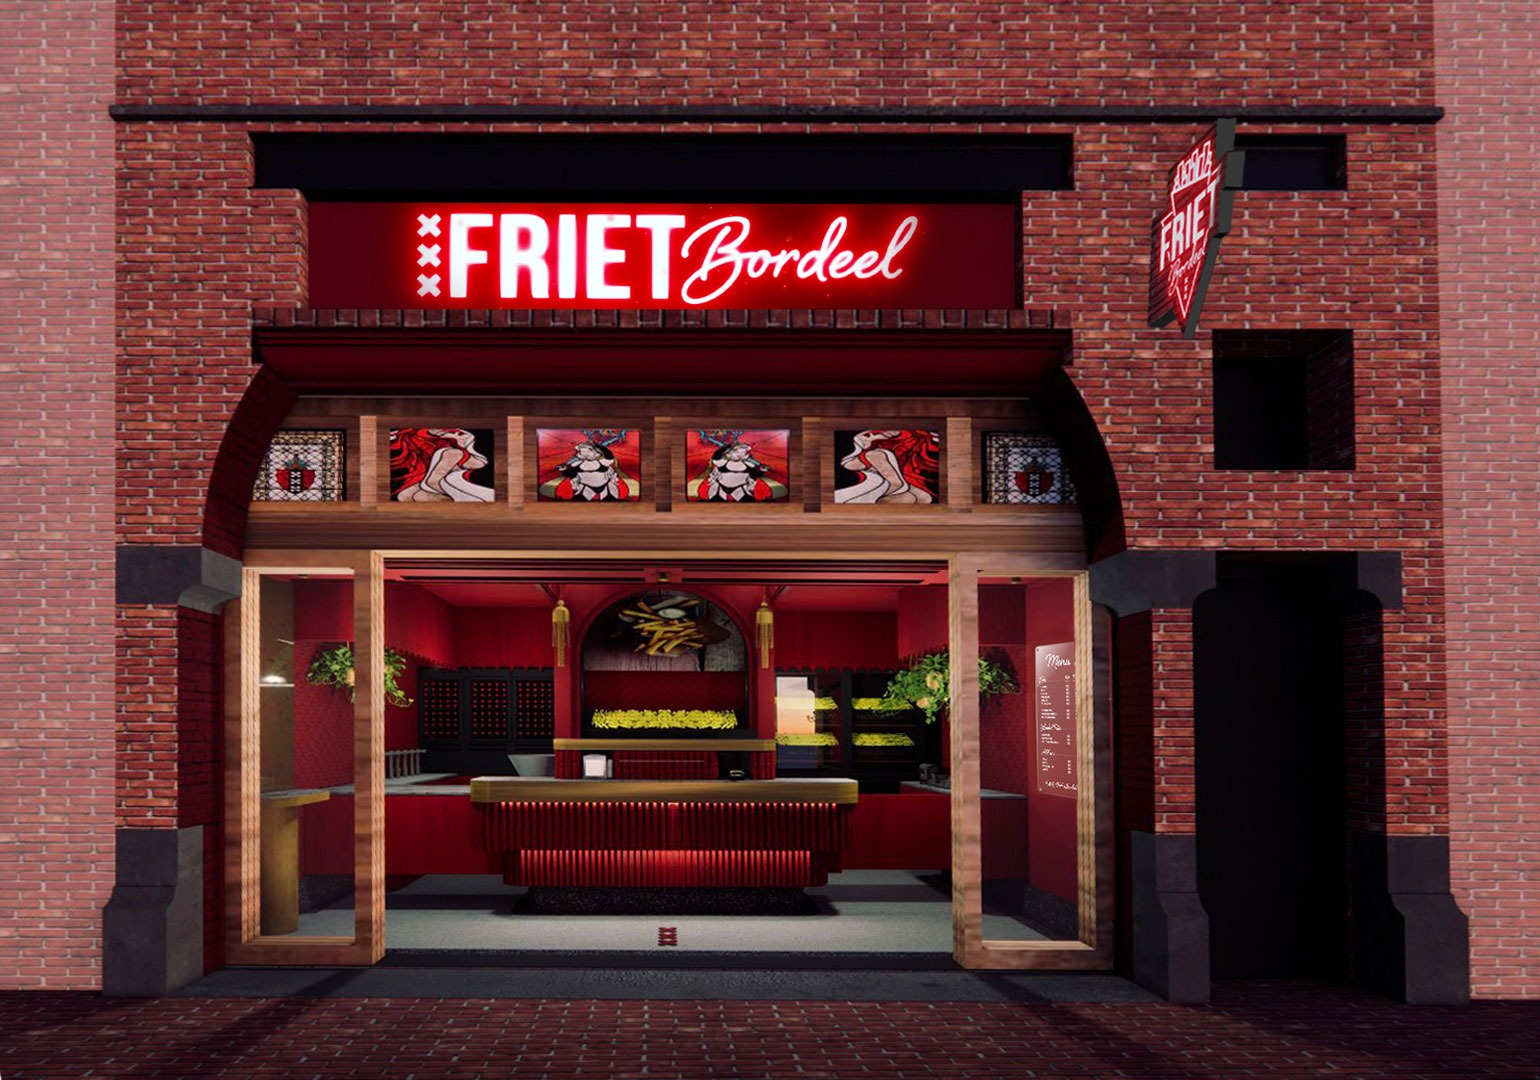 frietbordeel-jeroen-de-nijs-red-light-district-wallen-impressie-voorzijde-entrance